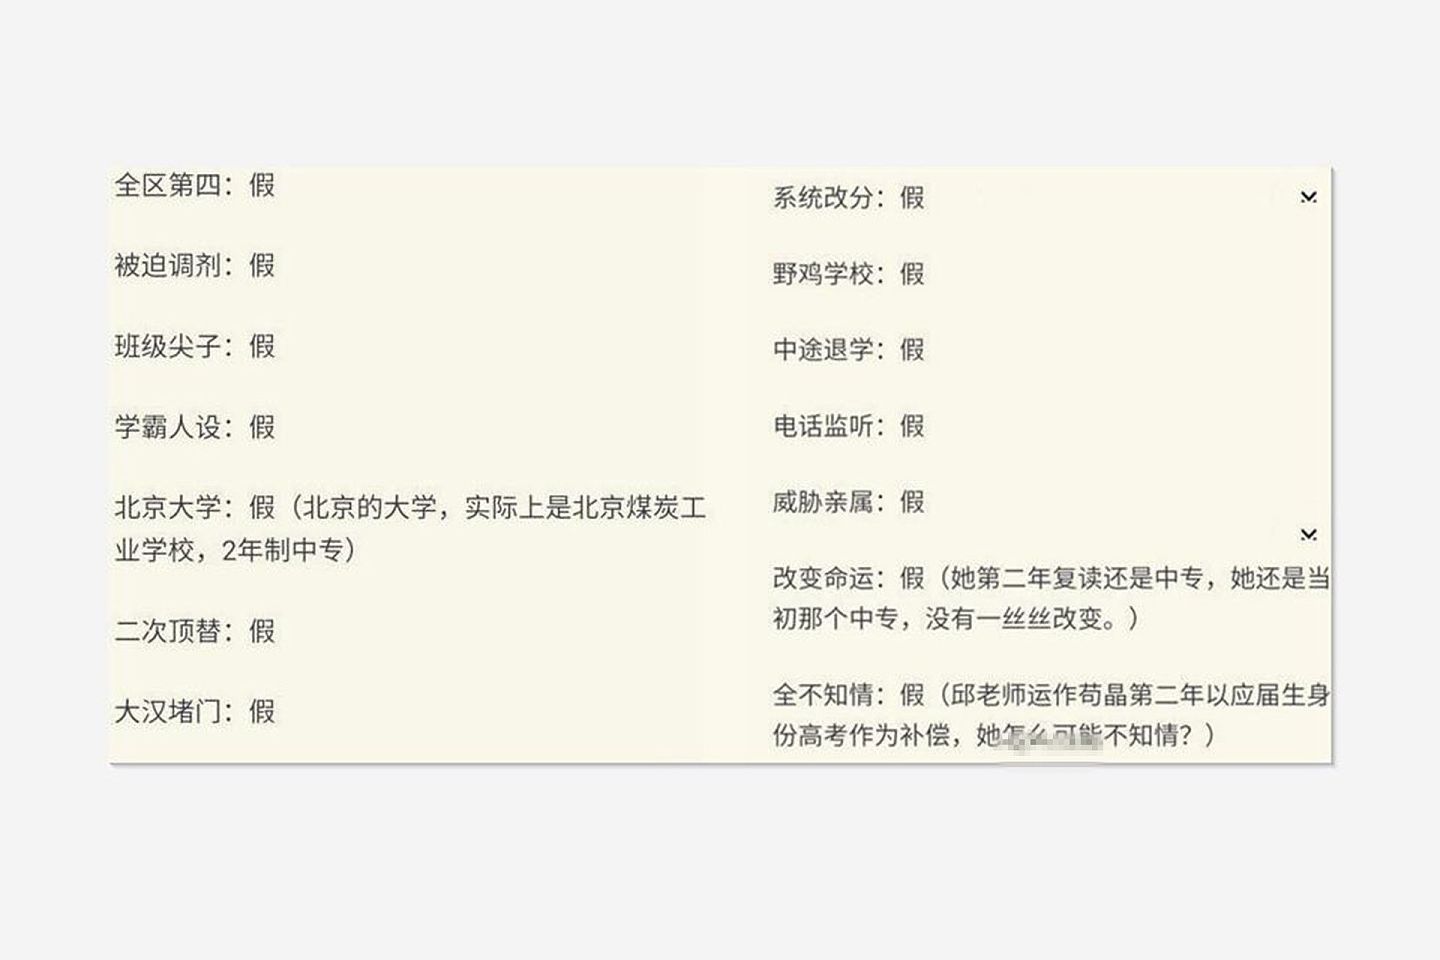 山东“苟晶事件”持续发酵。图为中国网友总结的苟晶接受采访时所说的“事实”，在通报后多数变成“谎言”，引发热议。（微博@HW前HR）